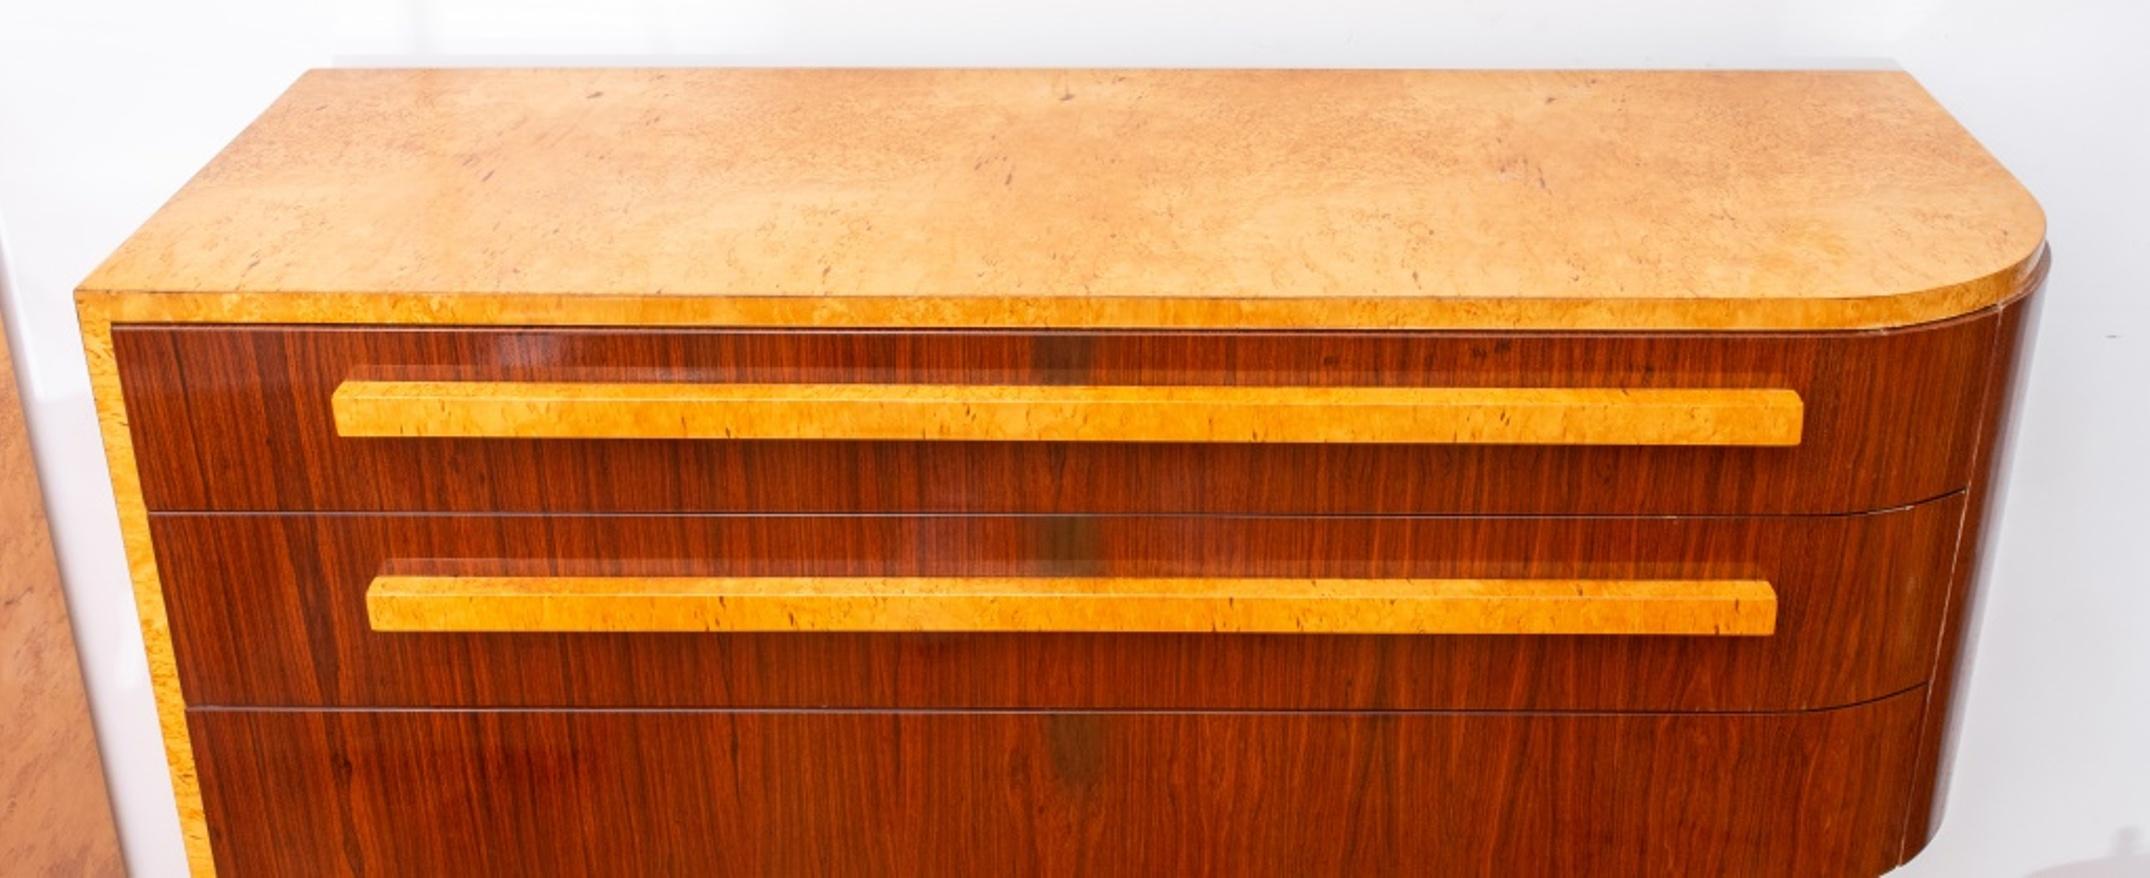 Donald Deskey (Américain, 1894-1989) Buffet console Art Déco avec de grands tiroirs dans le goût streamline moderne, en bois de ronce laqué. Cette pièce a été conçue par Deskey et fabriquée par Schmieg, Hungate & Kotzian, Inc. à New York, vers les